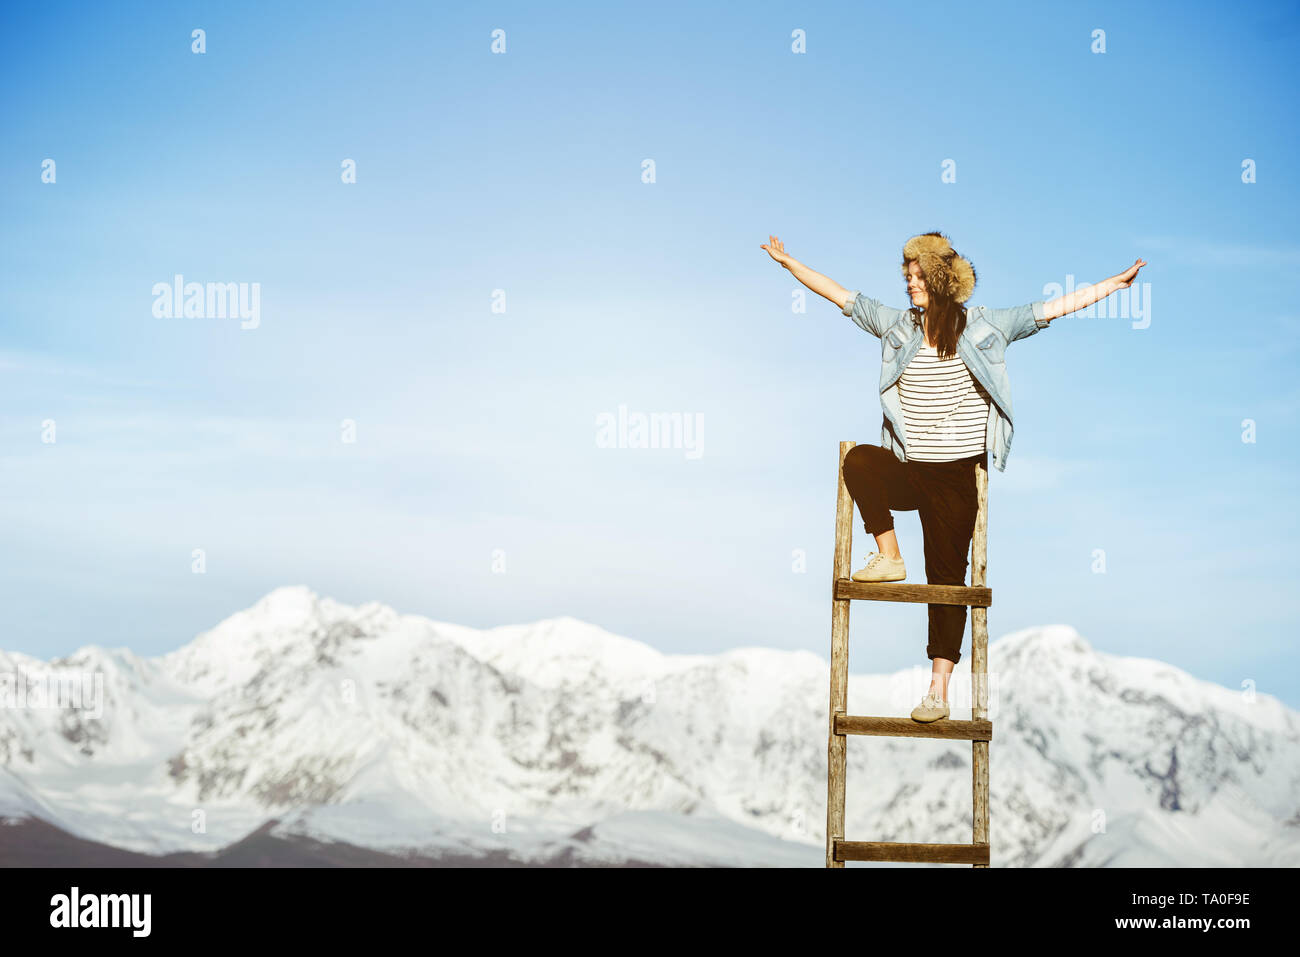 Heureuse jeune fille se tient sur l'escalier en bois avec bras levés contre les montagnes enneigées Banque D'Images